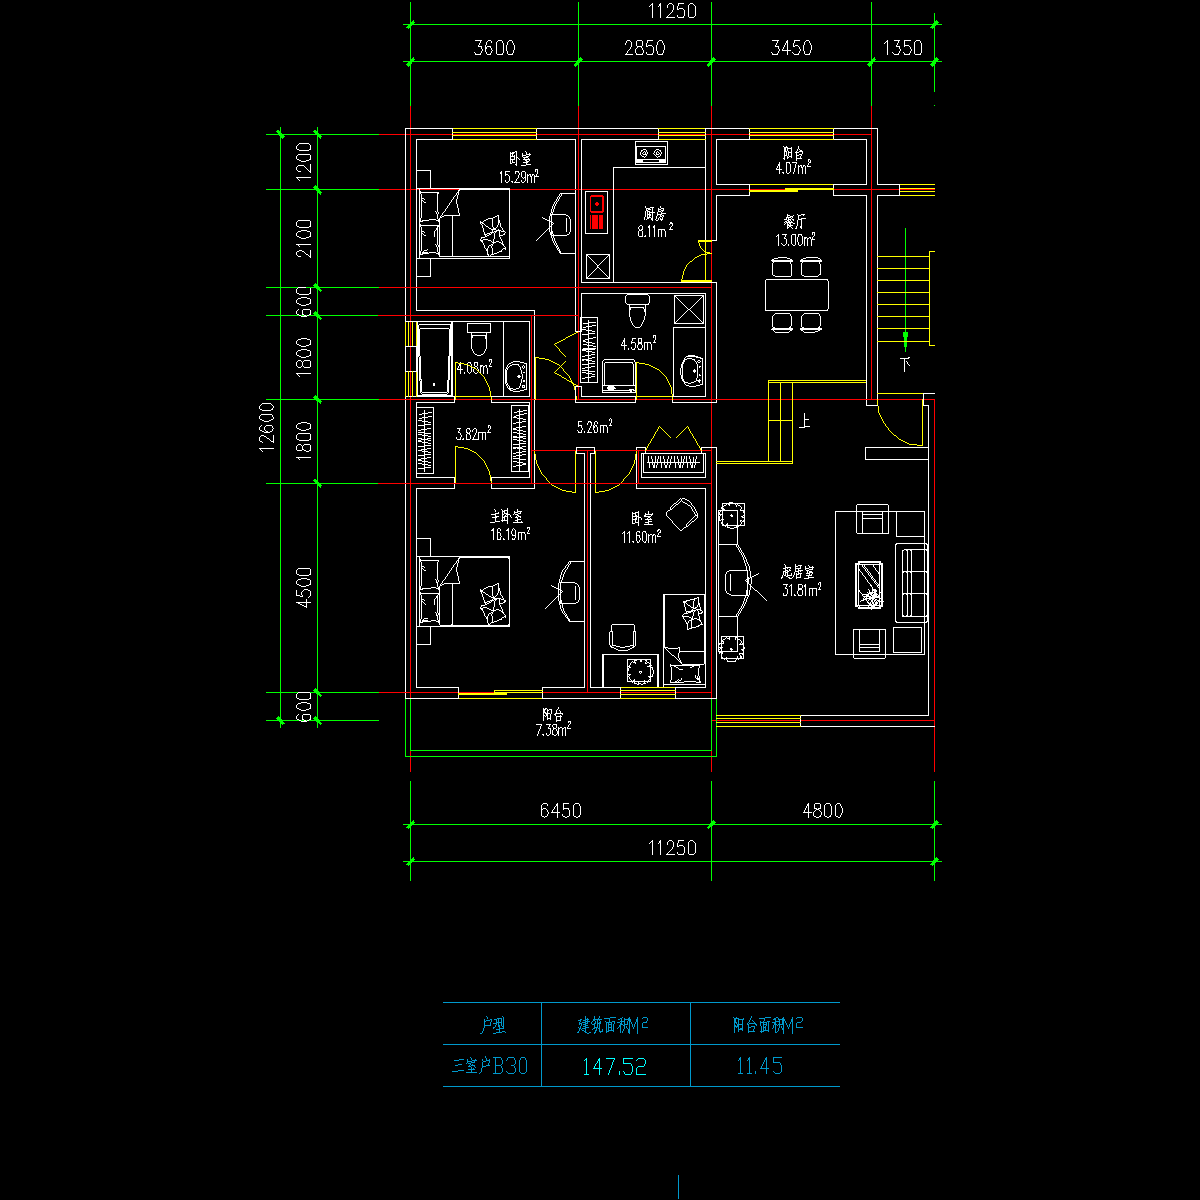 板式多层一梯两户三室一厅二卫户型CAD图纸(148/148)